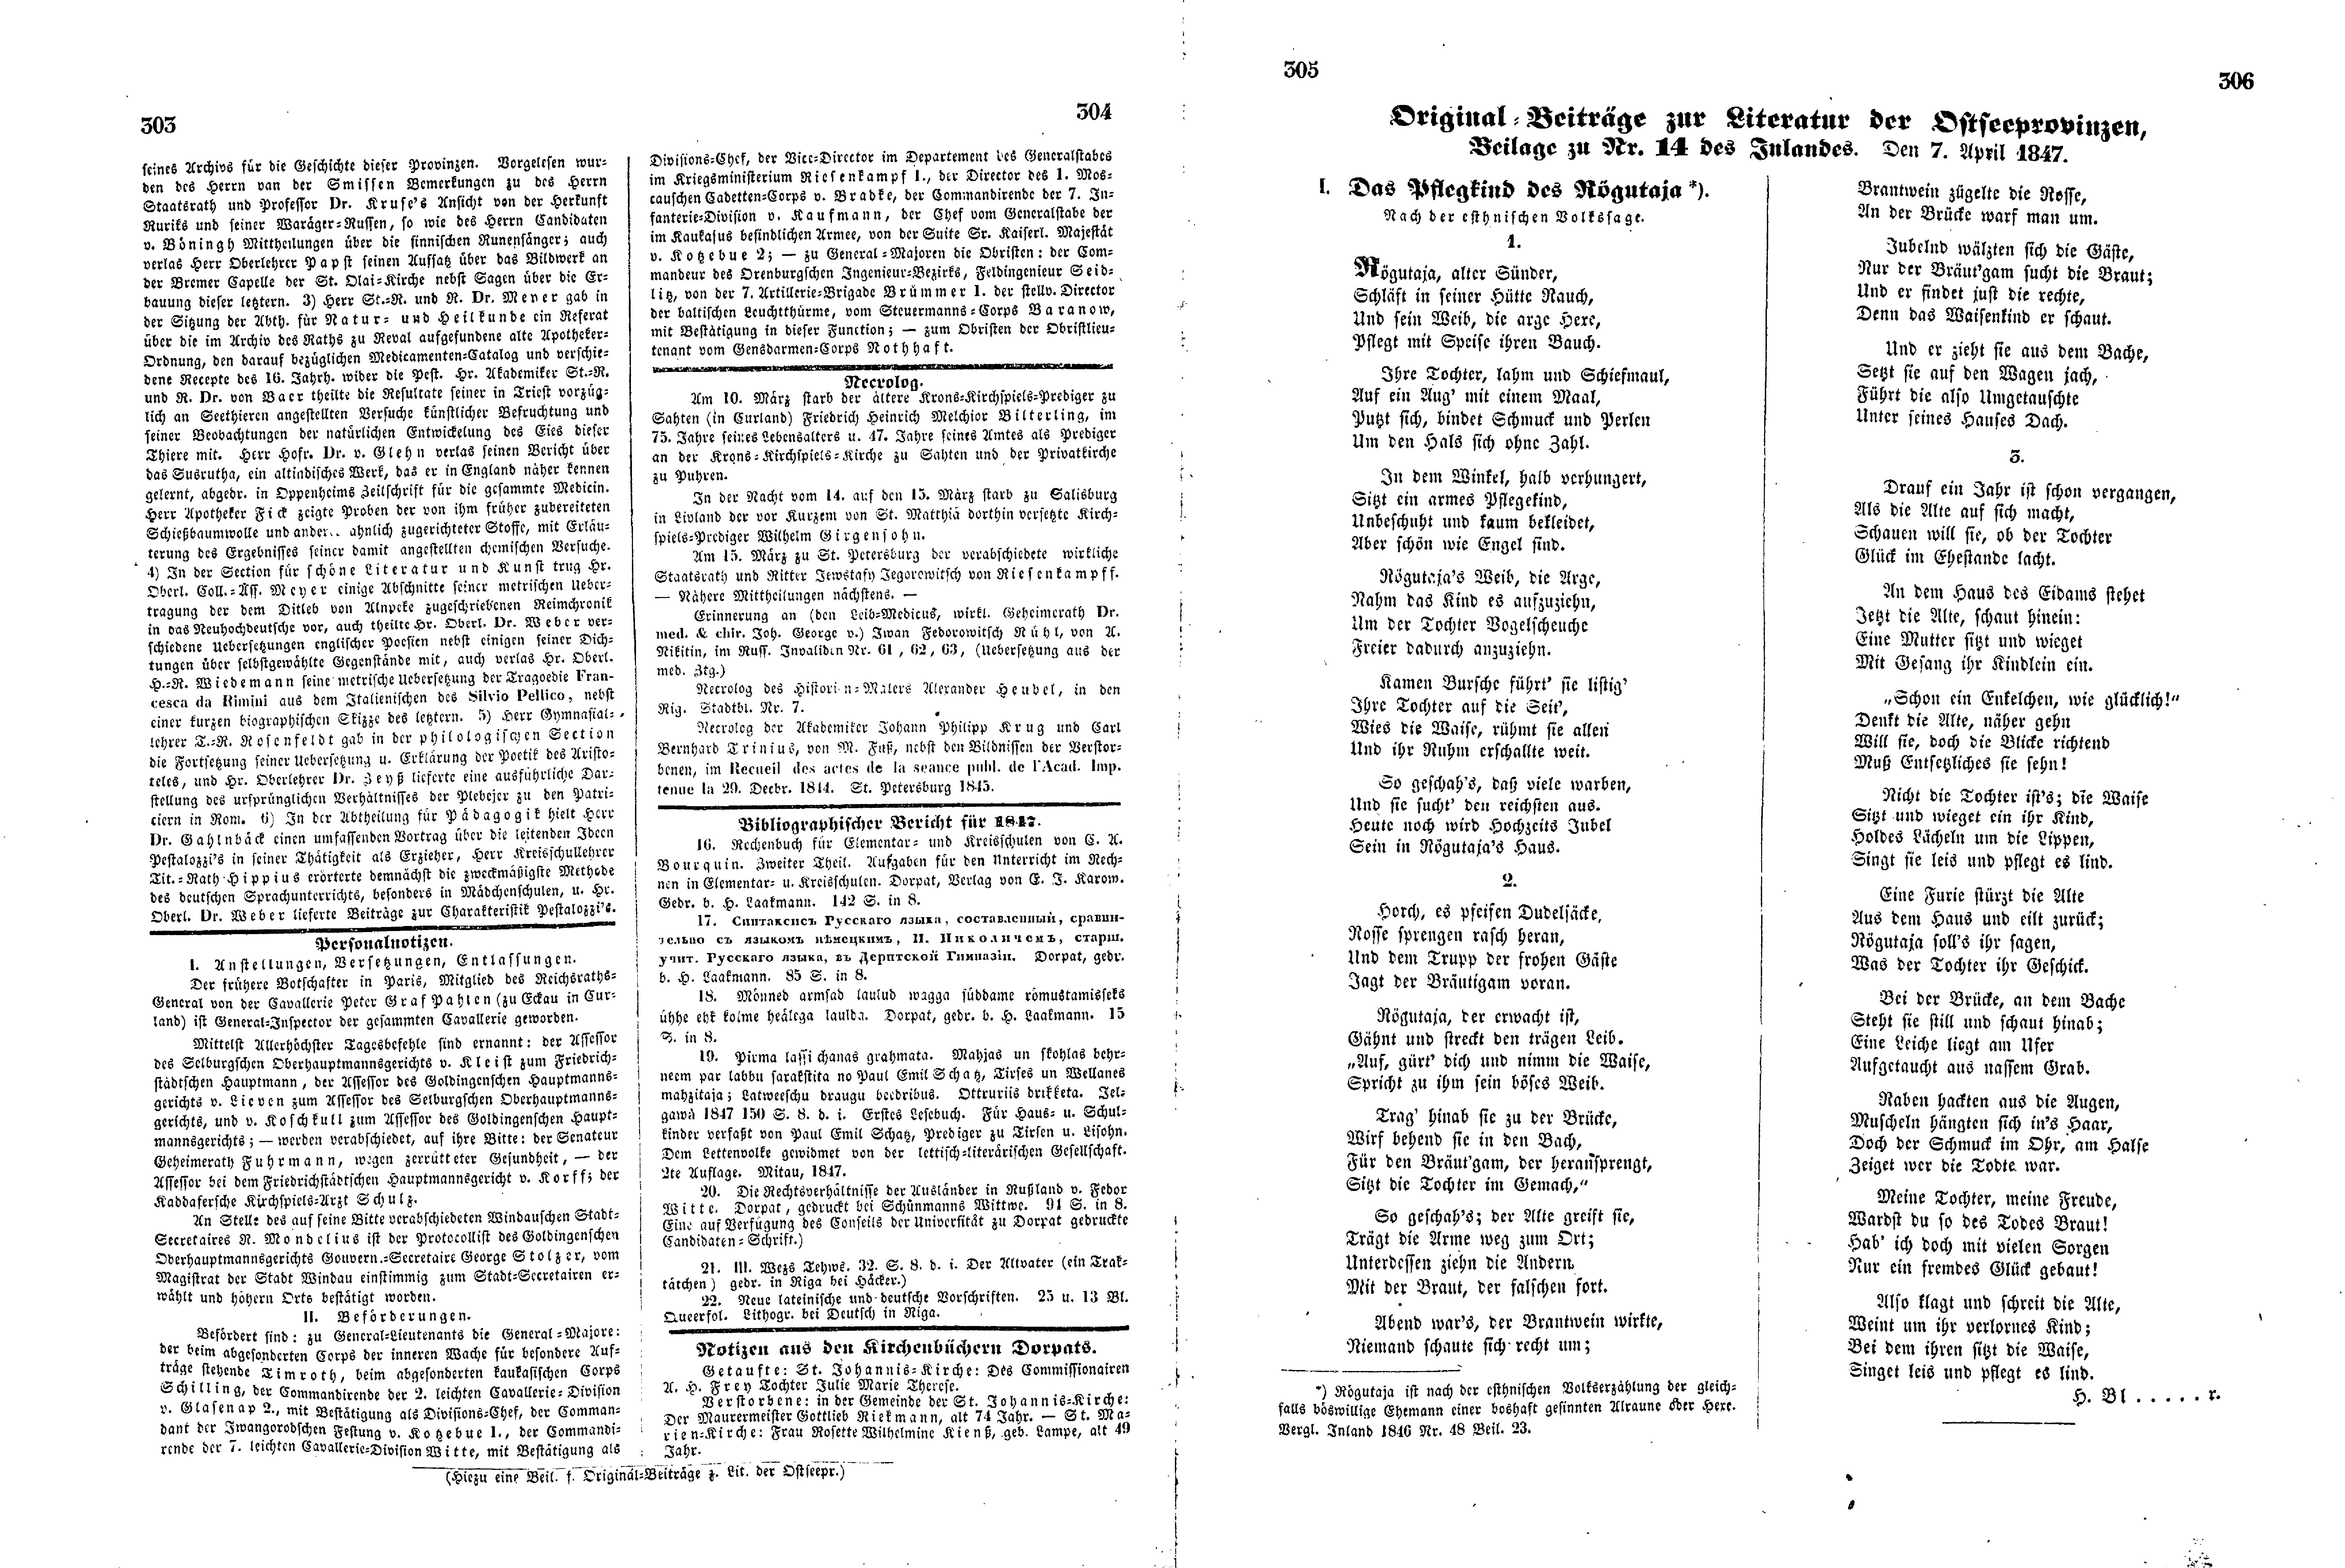 Das Inland [12] (1847) | 81. (303-306) Основной текст